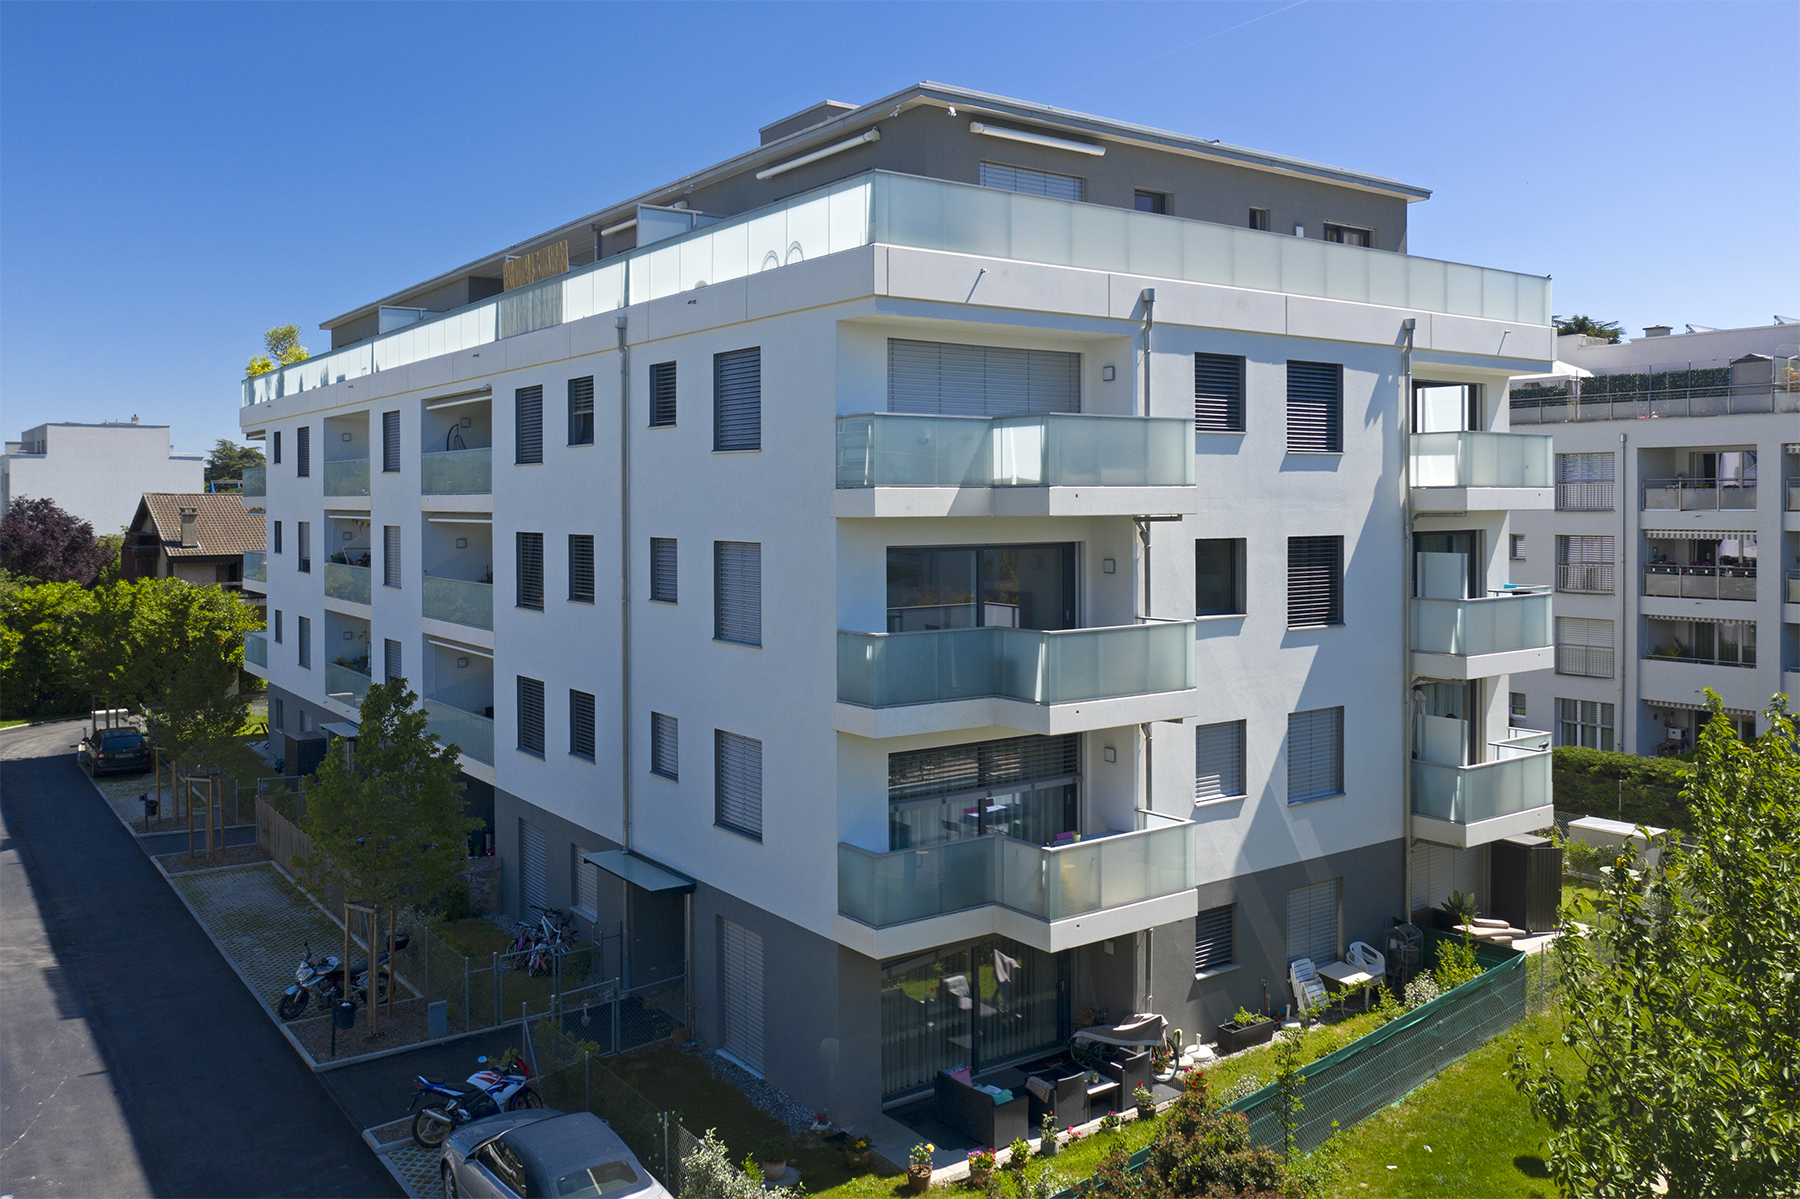 Construction de 2 immeubles dont un bâtiment qui comprend 17 appartements PPE et un bâtiment de 10 appartements locatifs sur la commune de Thônex.